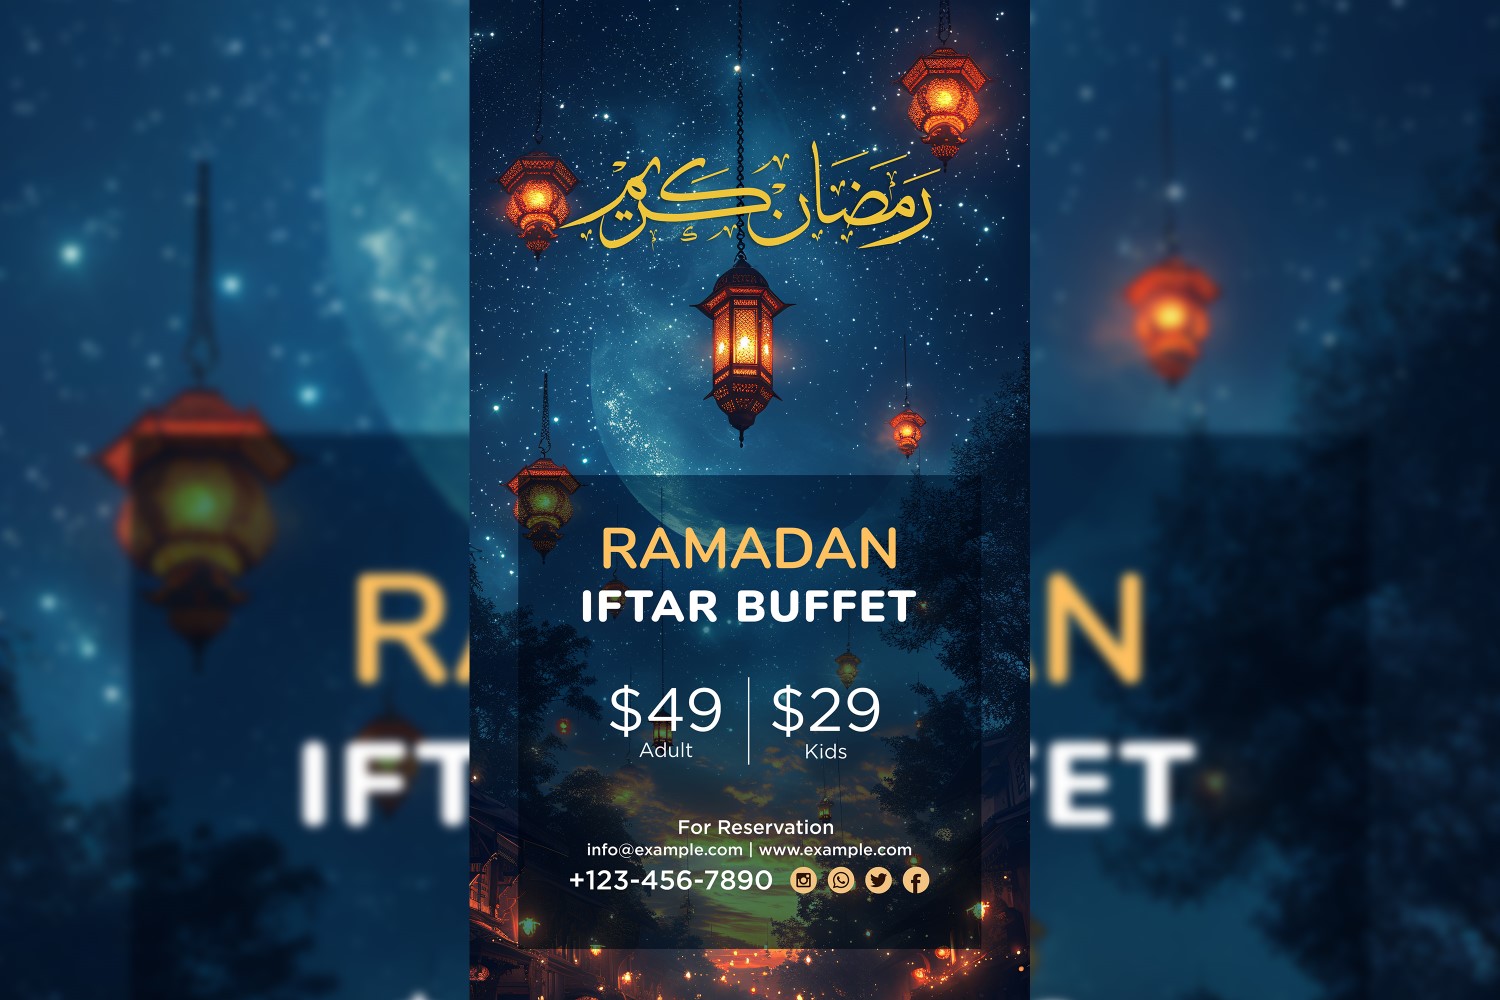 Ramadan Iftar Buffet Poster Design Template 06